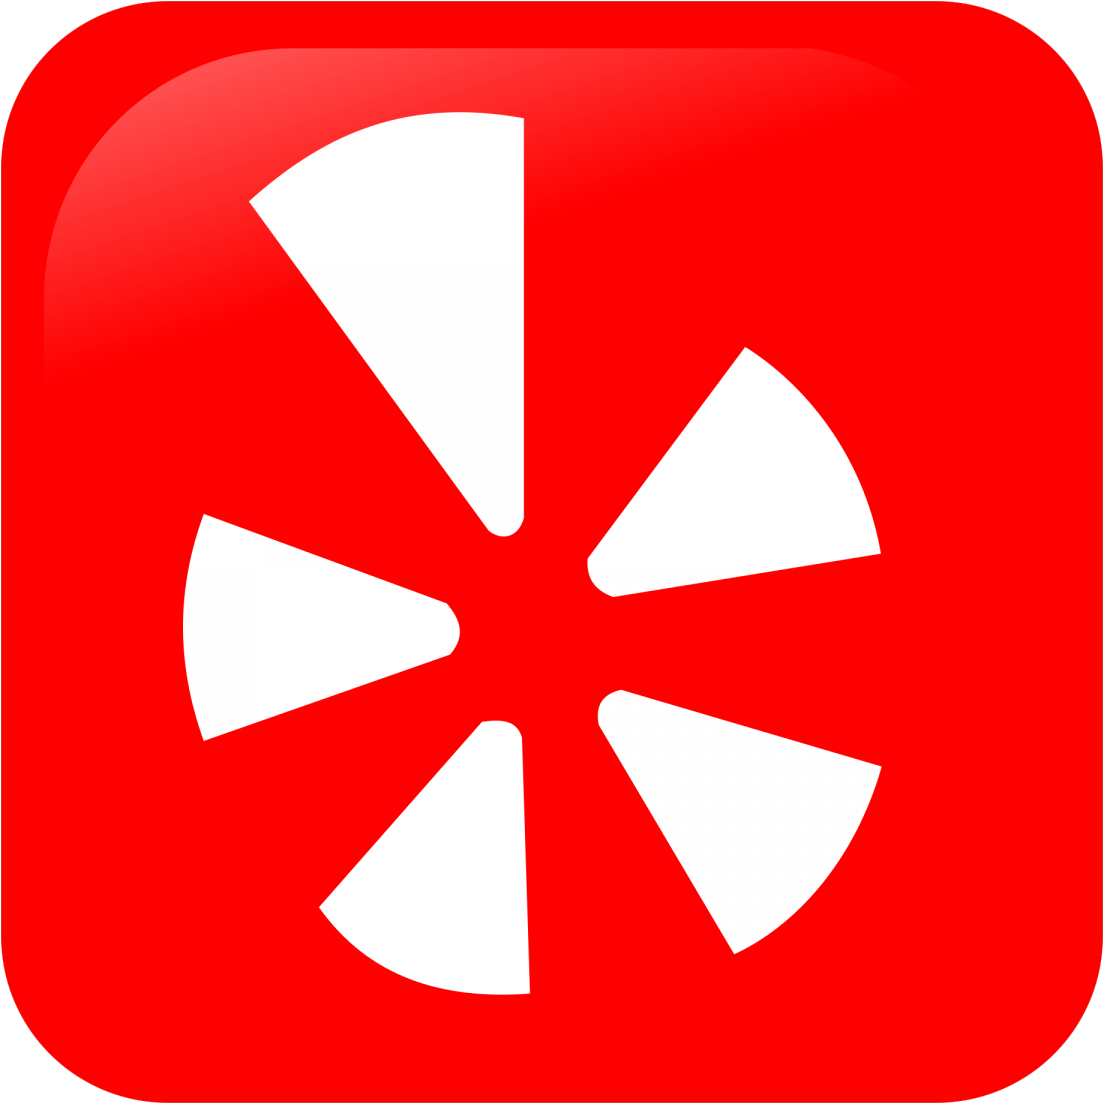 Logo Free Transparent Logos - Yelp Icon (1024x1024), Png Download